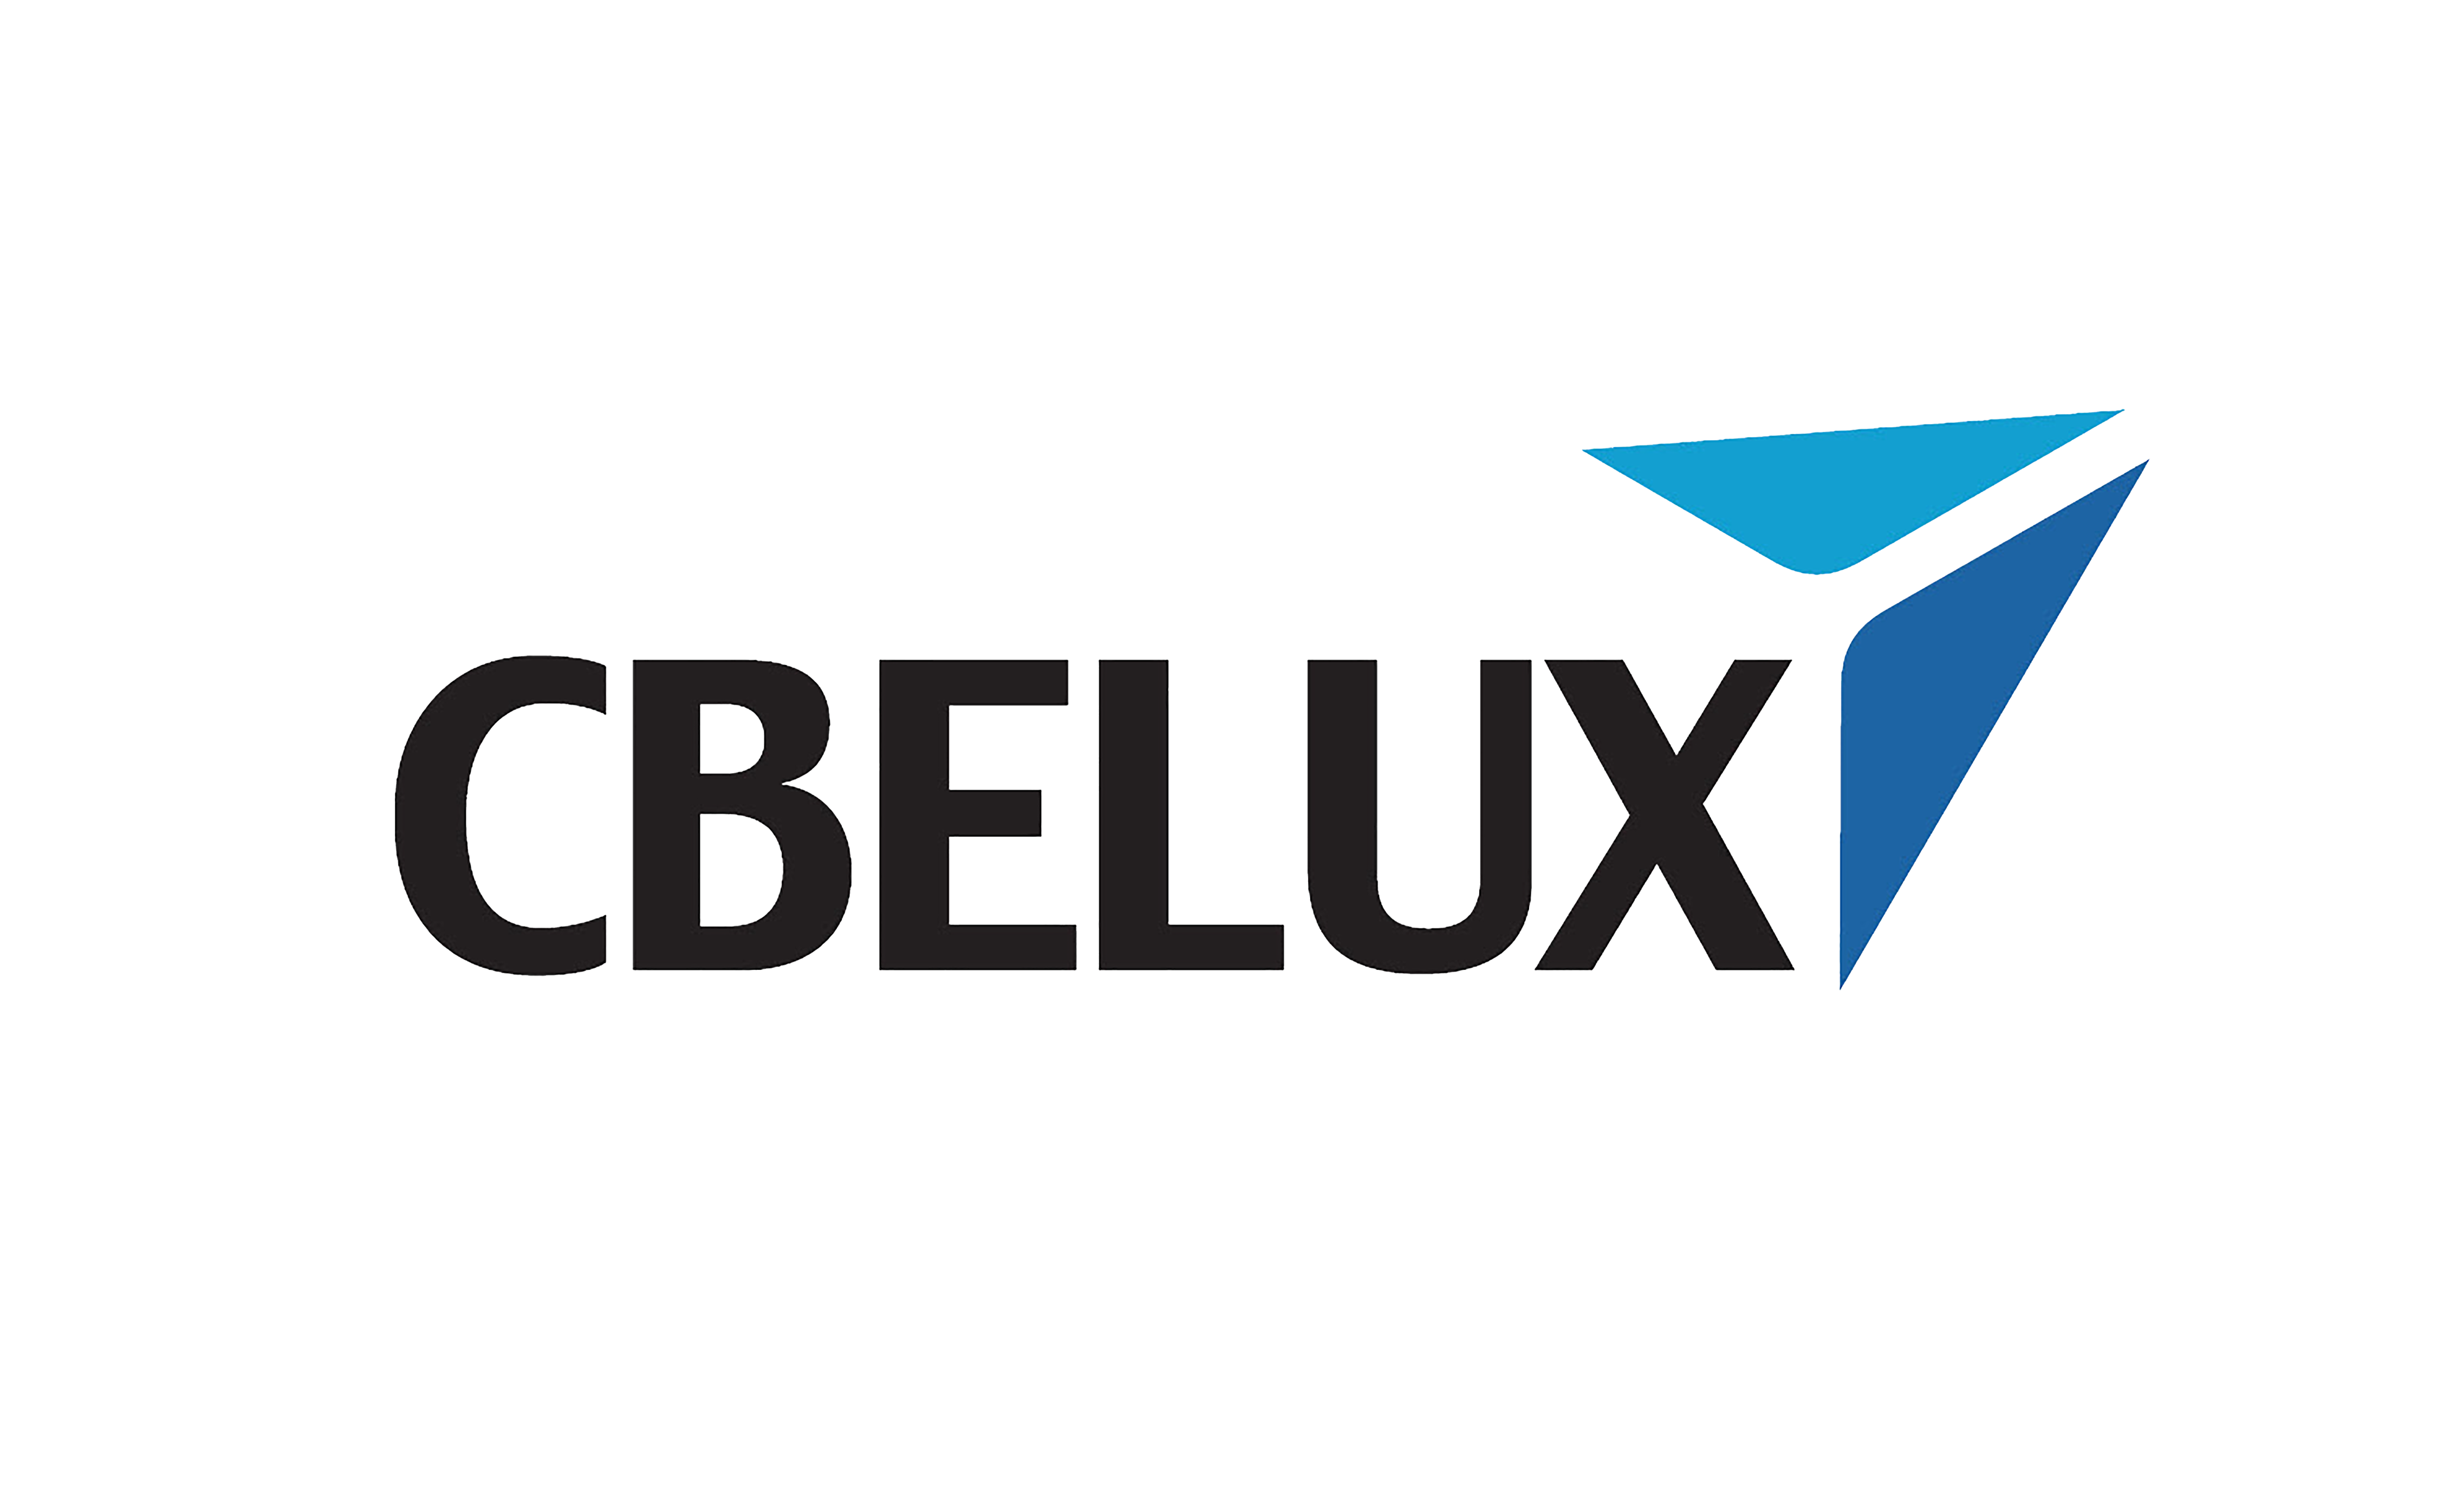 CBelux